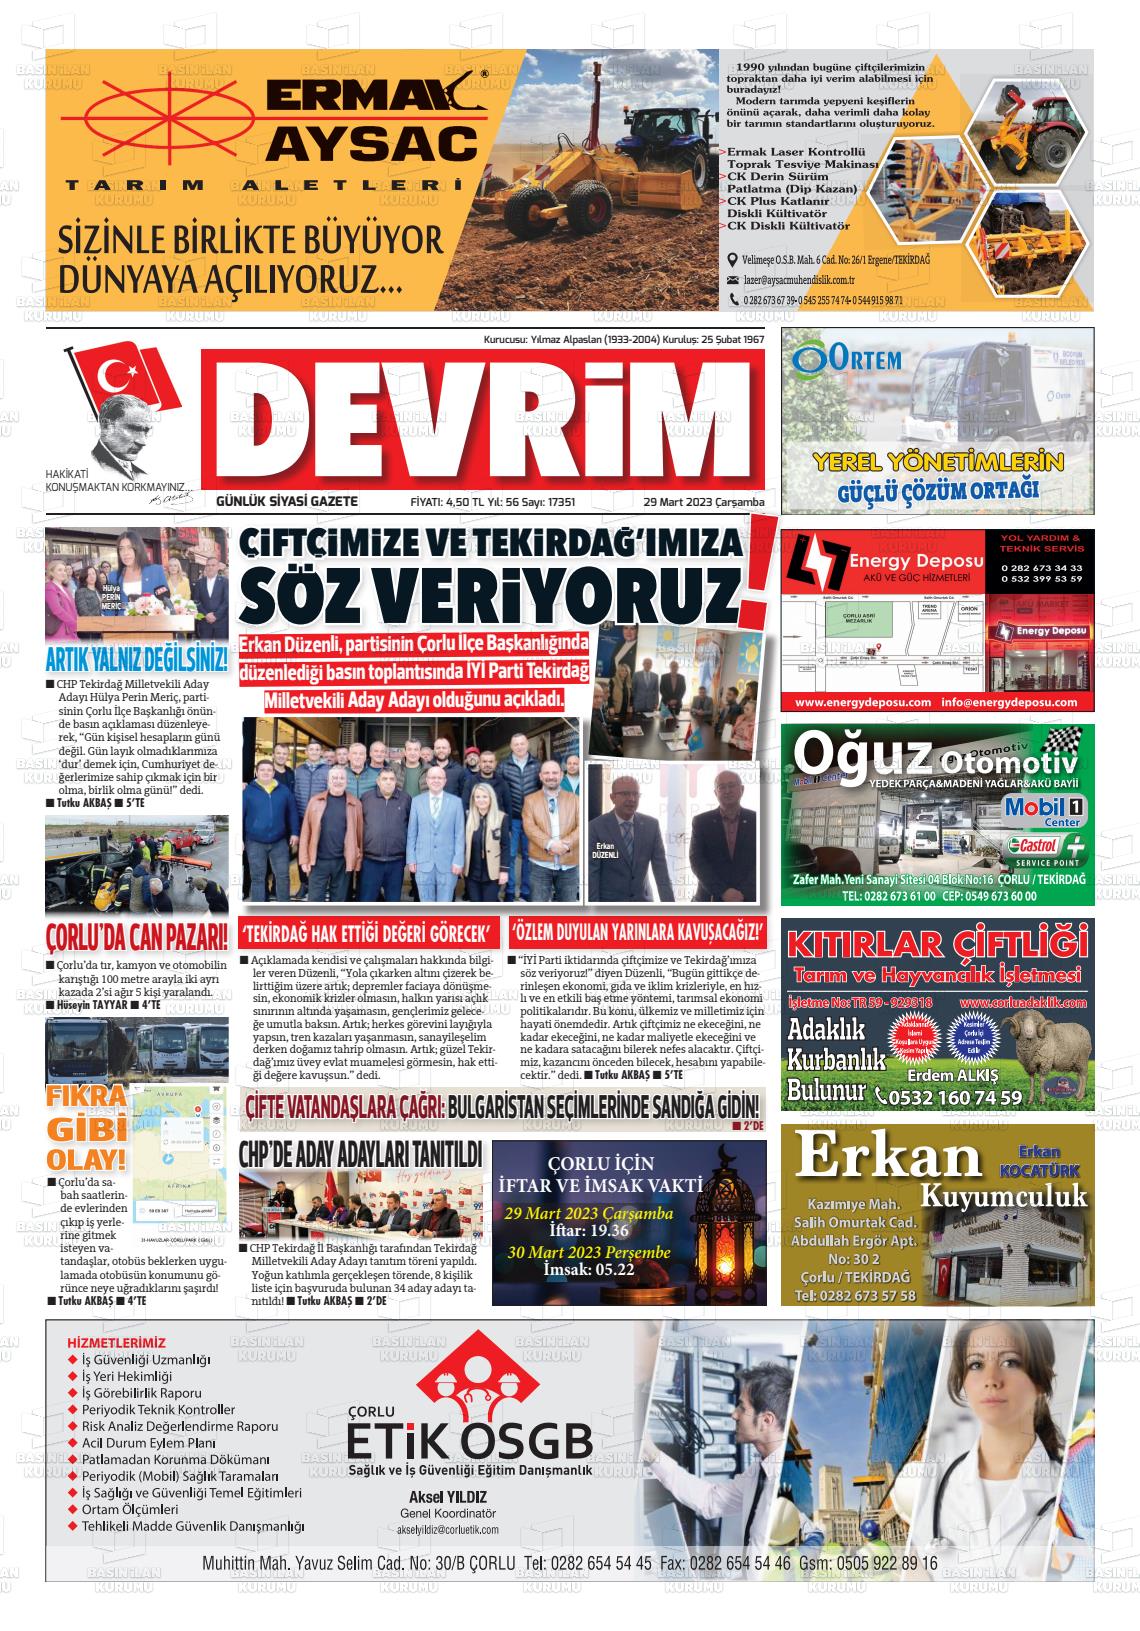 29 Mart 2023 Devrim Gazete Manşeti